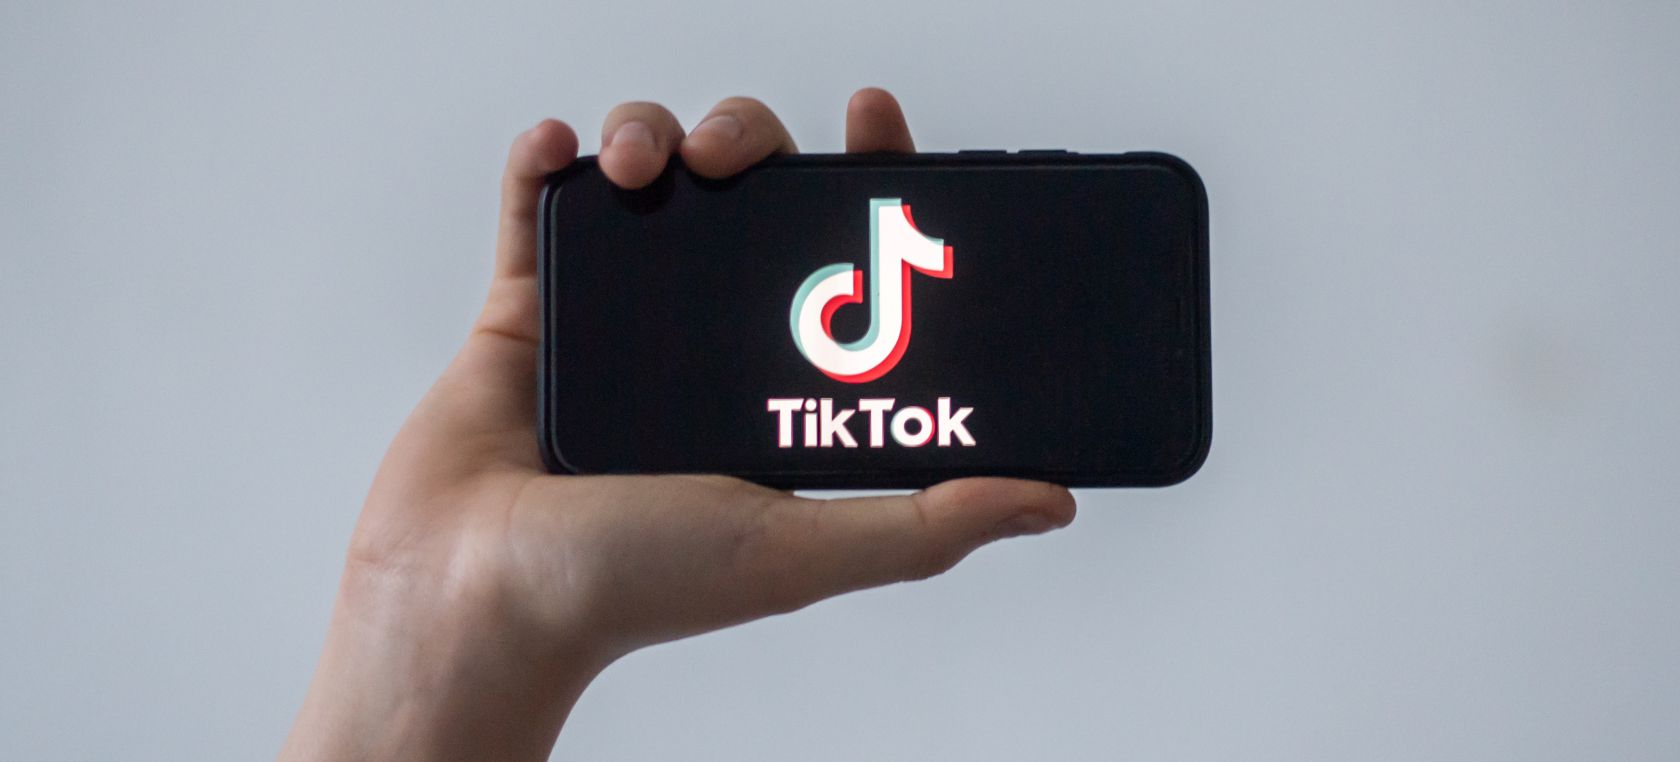 Cómo cambiar el fondo de los vídeos en TikTok paso a paso | Tecnología |  LOS40